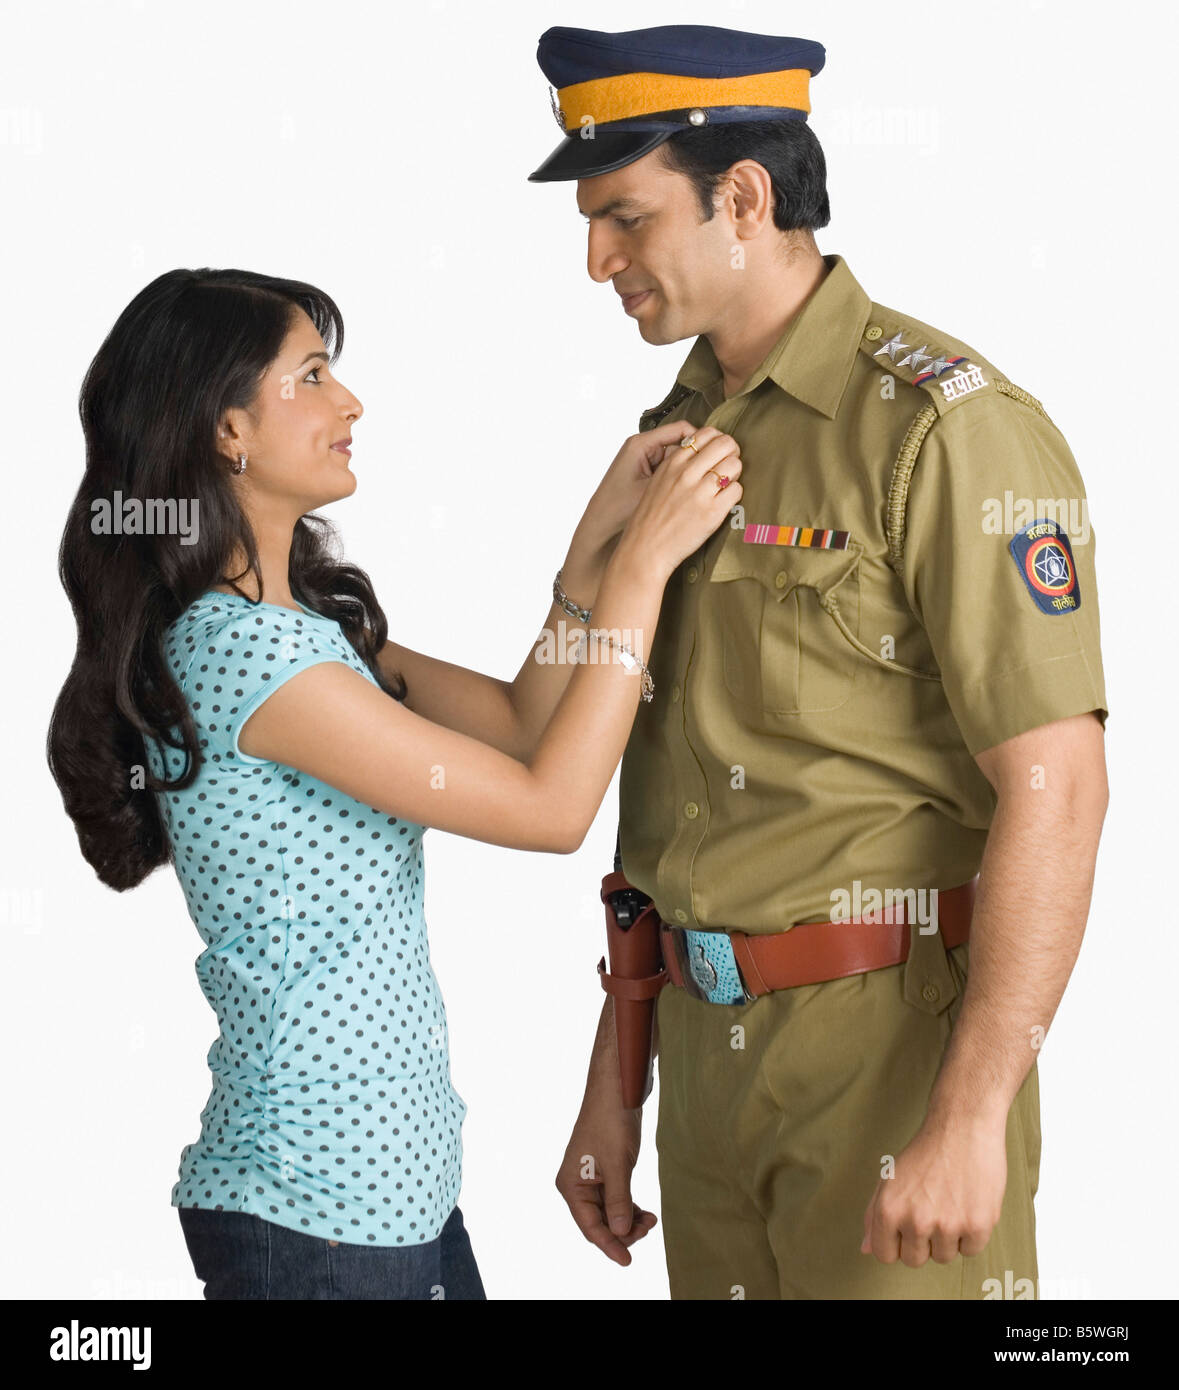 Seitenansicht eines Polizisten mit seiner Frau Stockfoto